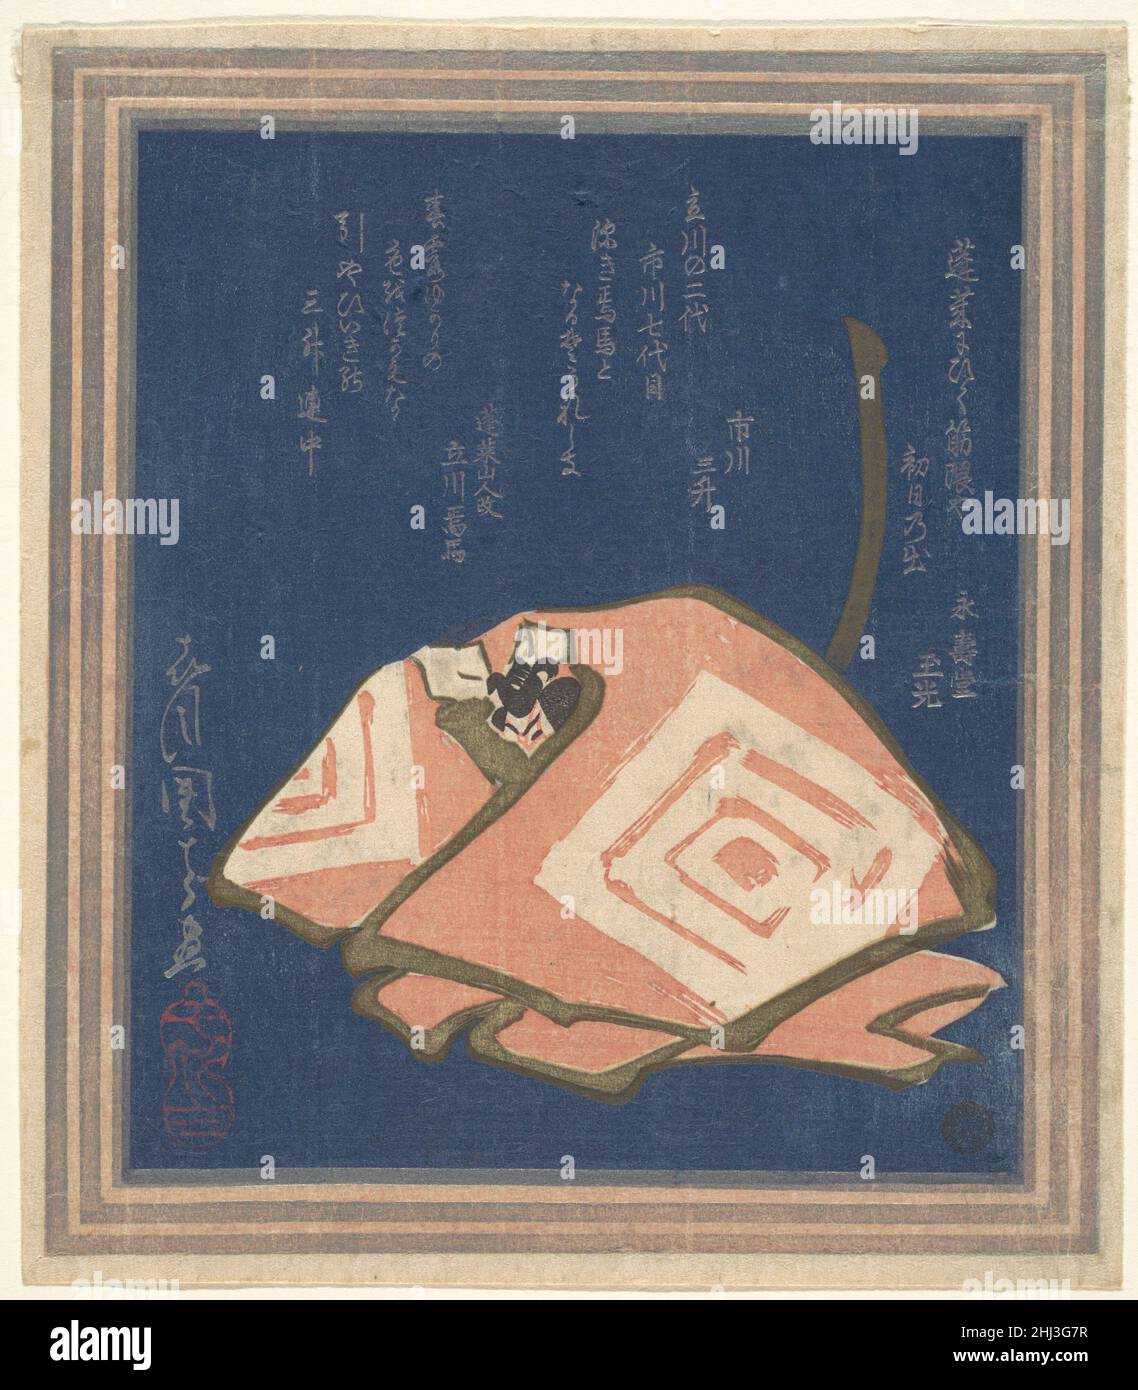 Selbstporträt von Danjuro VII in einer Shibaraku-Performance Ichikawa Danjūrō VII der Japaner Ichikawa Danjūrō VII porträtierte sich selbst in einem Shibaraku! Leistung. „Shibaraku!“ Wurde üblicherweise im Rahmen der jährlichen November-Produktion "showing-Faces" (kaomise) aufgeführt, um eine Gruppe von Schauspielern der Öffentlichkeit vorzustellen. Der bombastische Ruf von „Shibaraku!“ Man glaubte, das Böse abzuwehren. Drei Gedichte sind über dem Bild eingeschrieben, darunter Danjūrō Gedicht in der Mitte. Dominierend auf dem Bild ist das berühmte Familienwappen aus drei verschachtelten Quadraten (mimasu), die beide auf den Ärmeln des Kimono an der Figur zu sehen sind Stockfoto